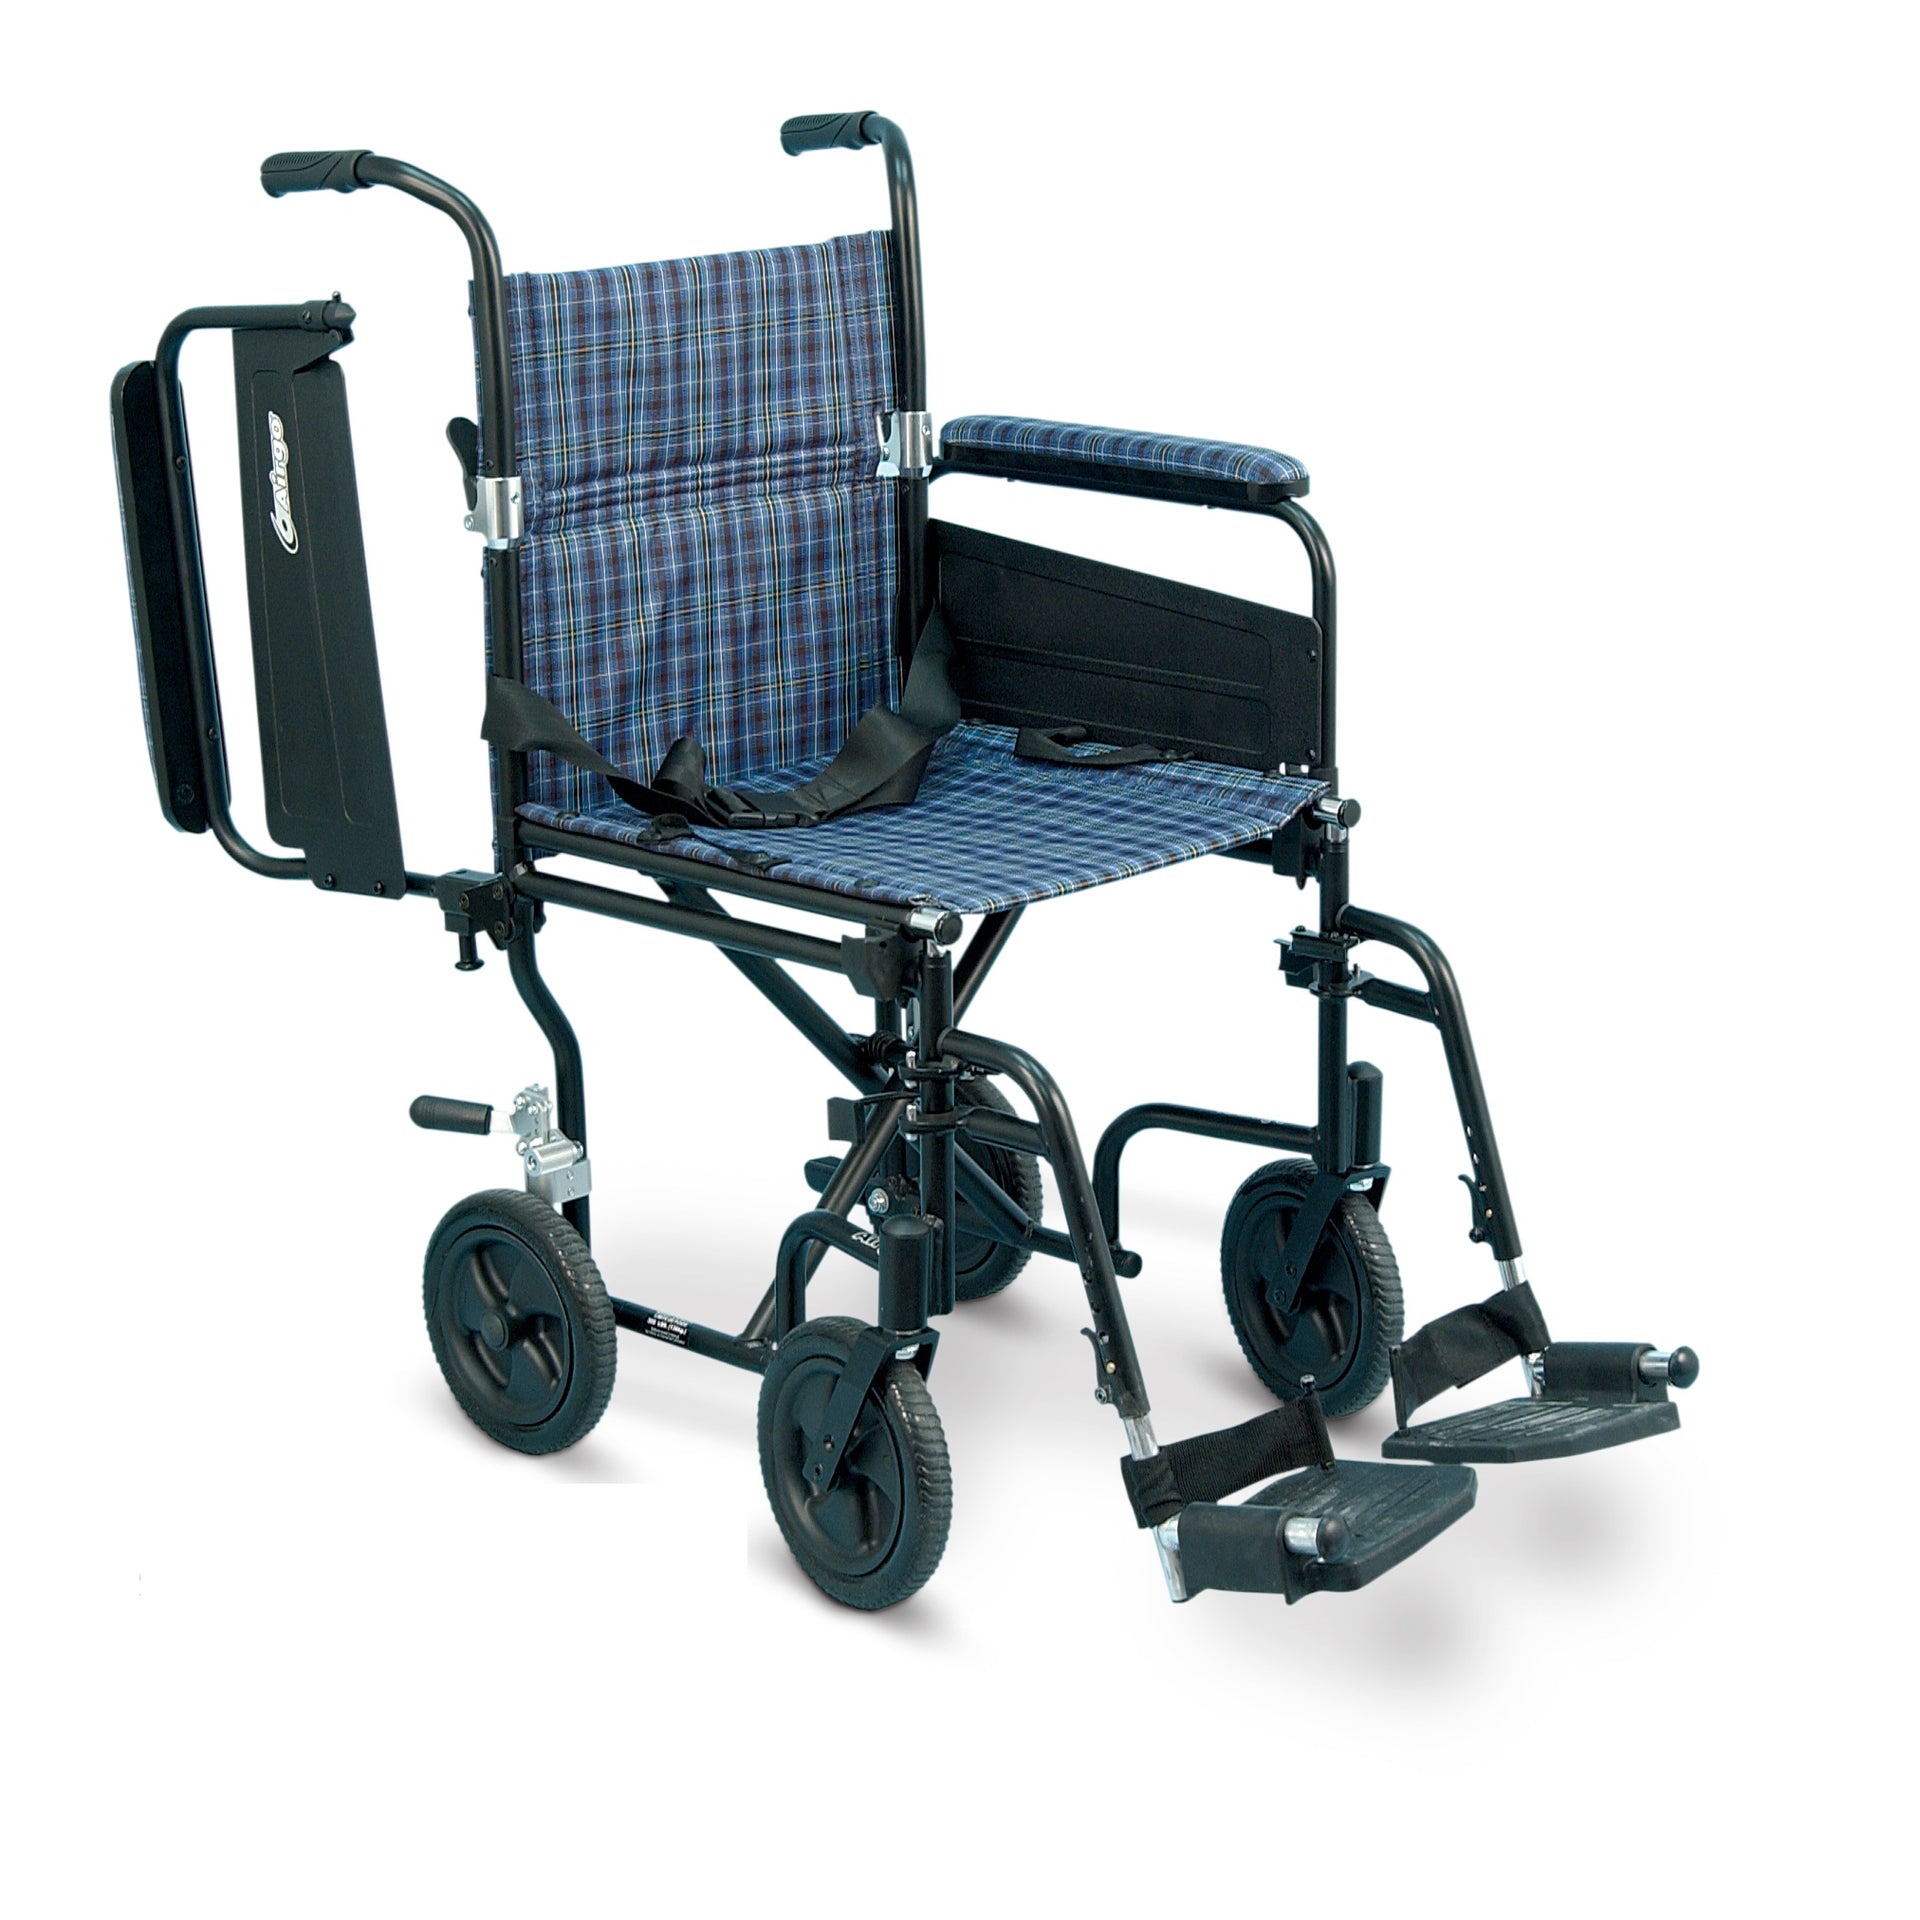 https://groupesoinsadomicile.com/cdn/shop/products/chaise-roulante-de-transport-airgo-comfort-plus-couleur-ecossais-bleu.jpg?v=1577130109&width=1920